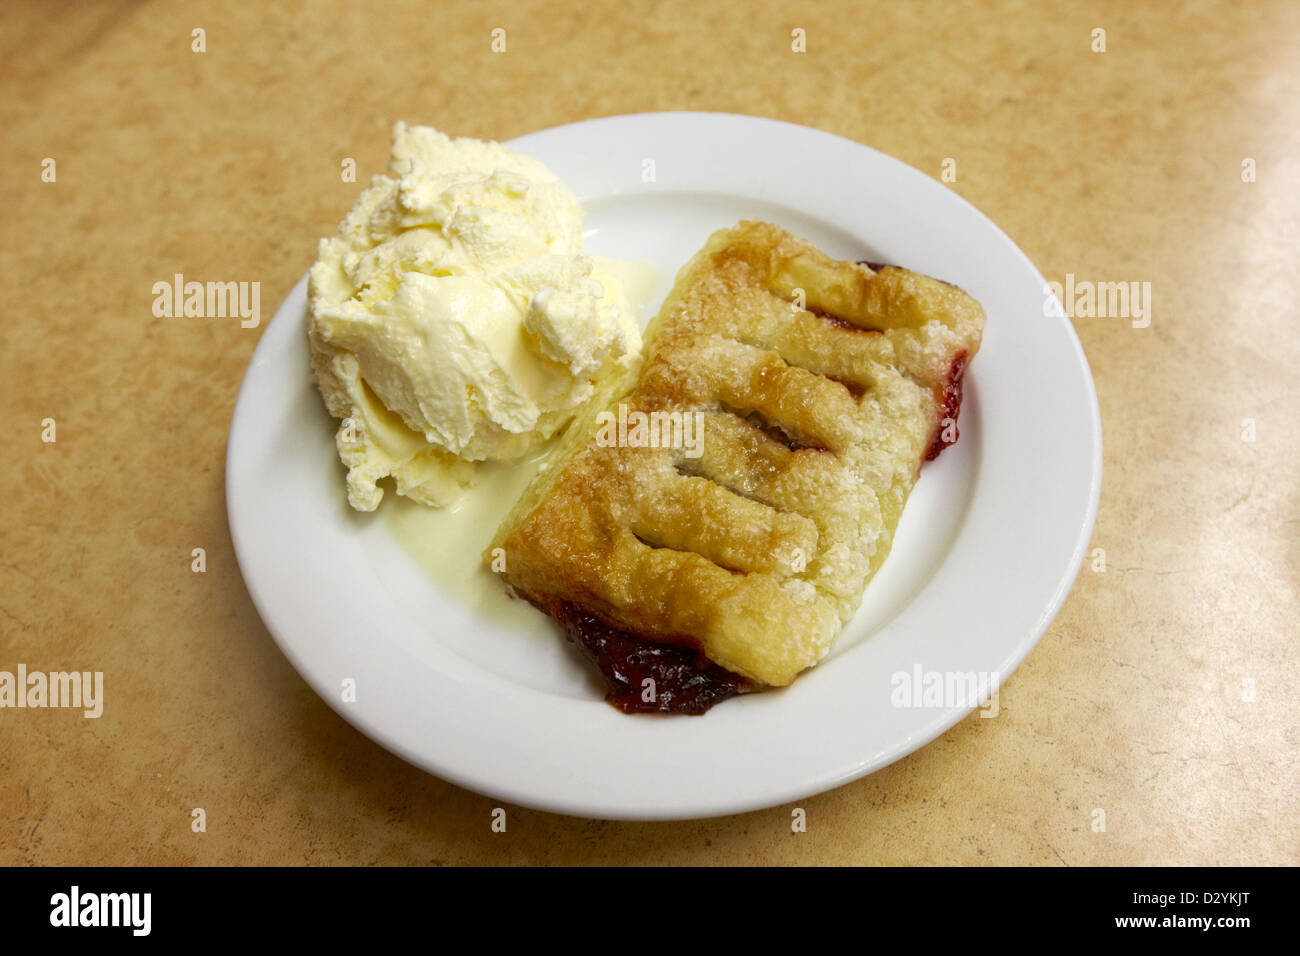 Mikrowelle, Obstkuchen und Eis ein la mode in einem billigen Diner in  Nordamerika Stockfotografie - Alamy